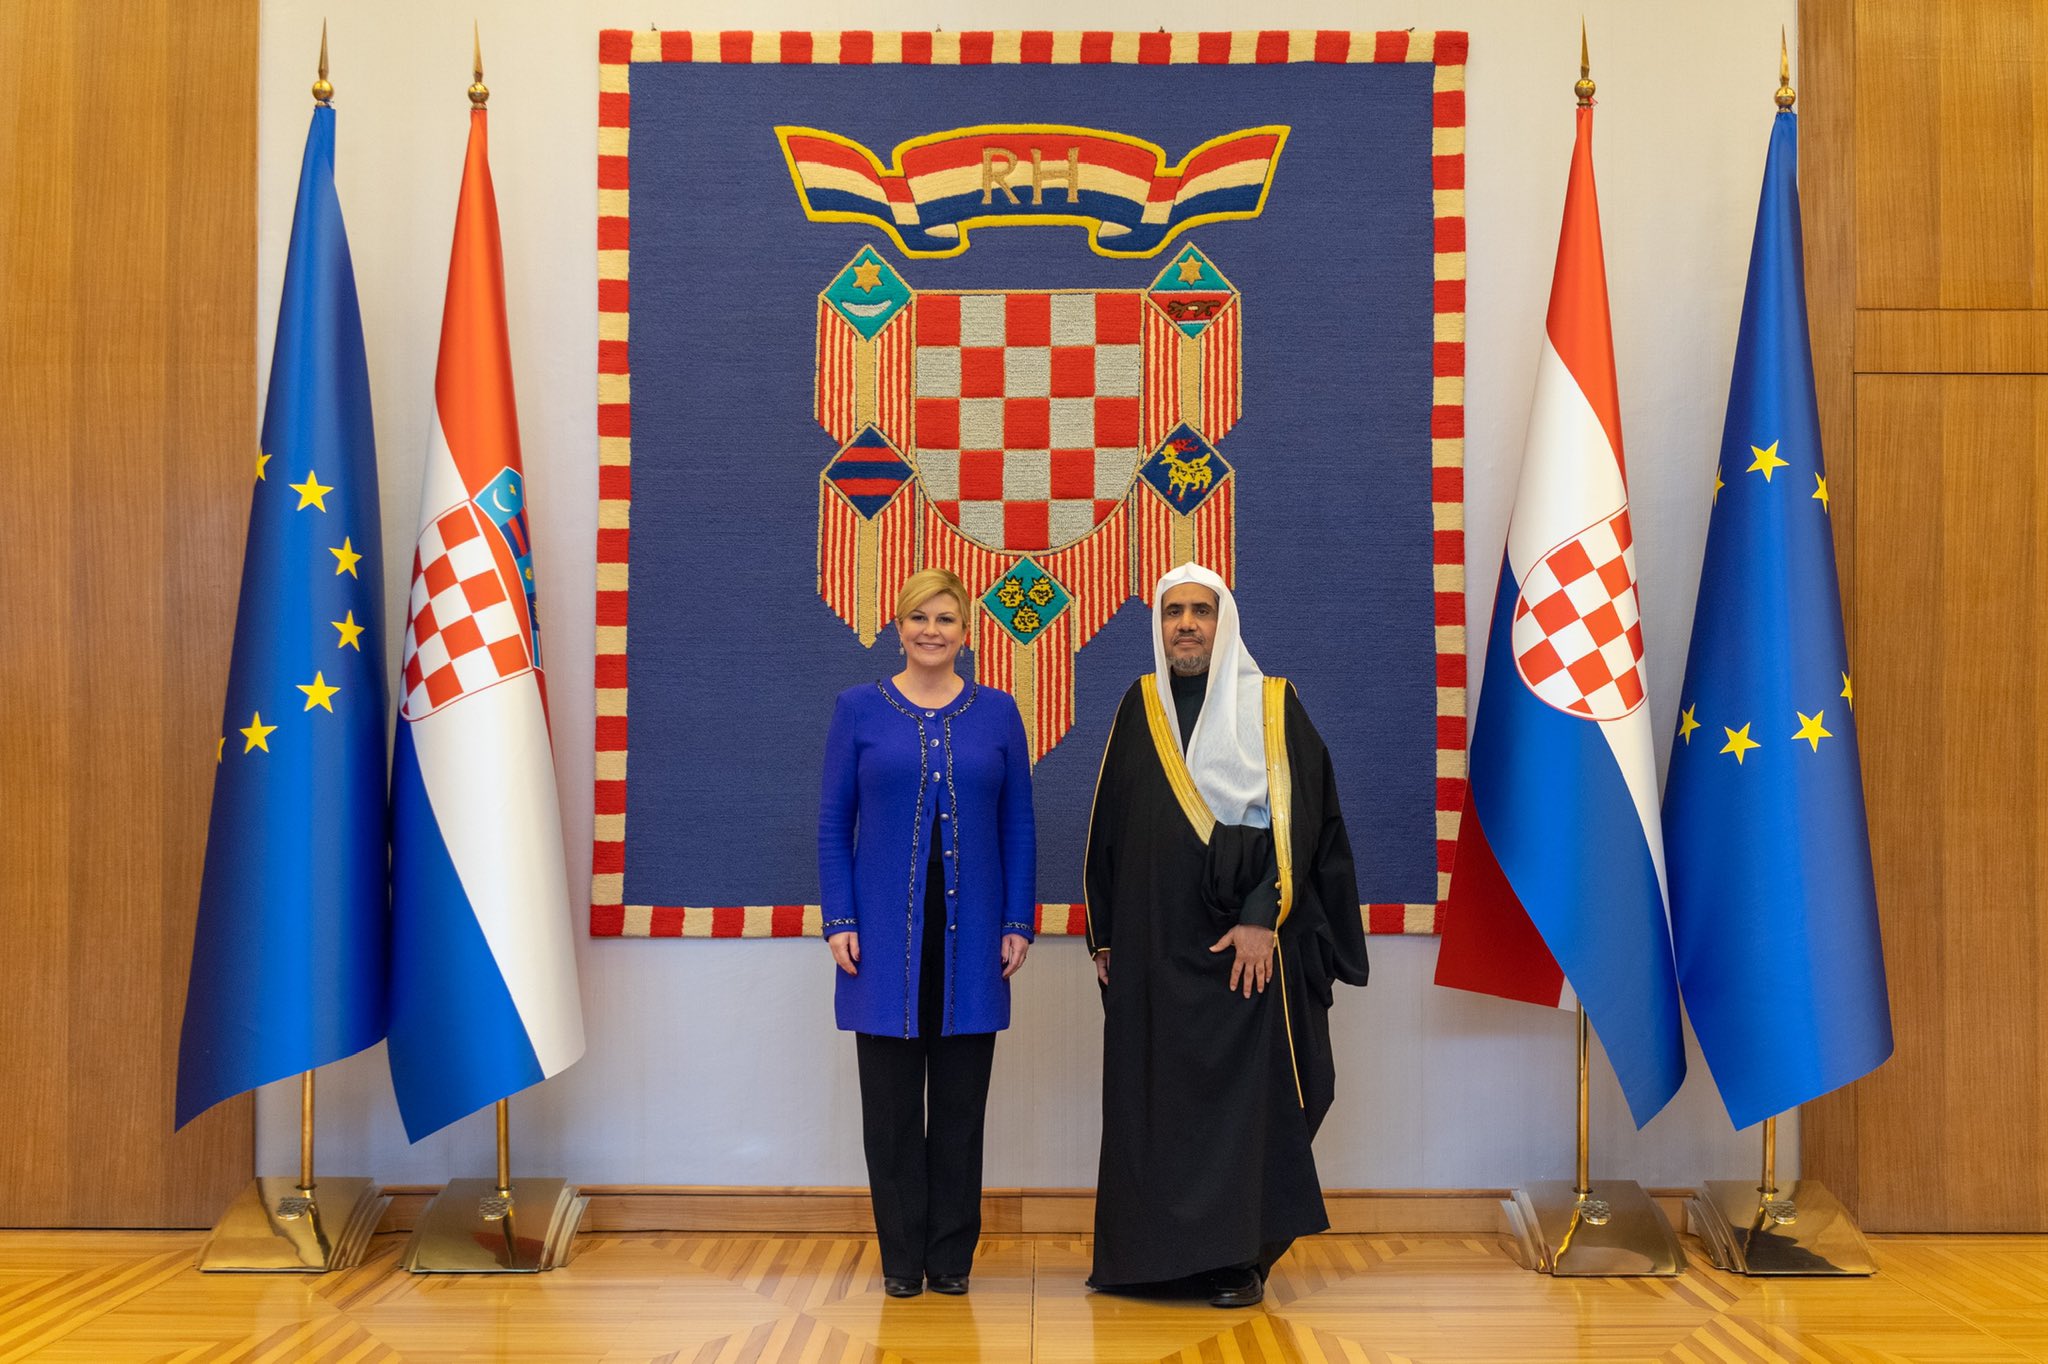 HE Dr. Mohammad Alissa met with Croatian President Ured_PRH Kolinda GKto